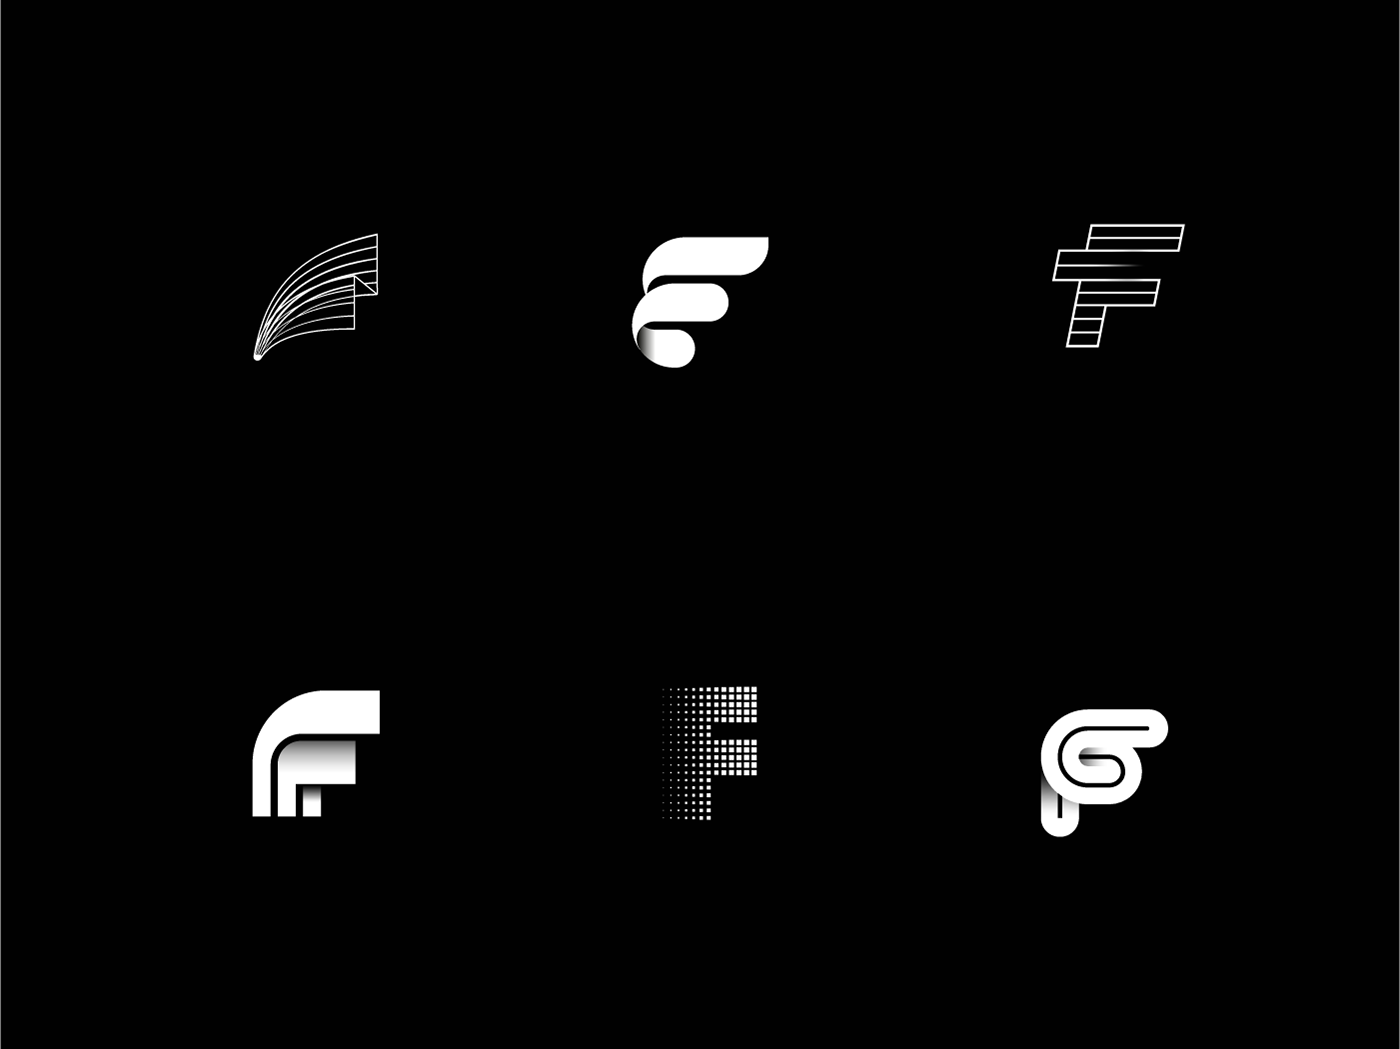 logo letter alphabet branding  Project a b  c  d E F G h Letterform